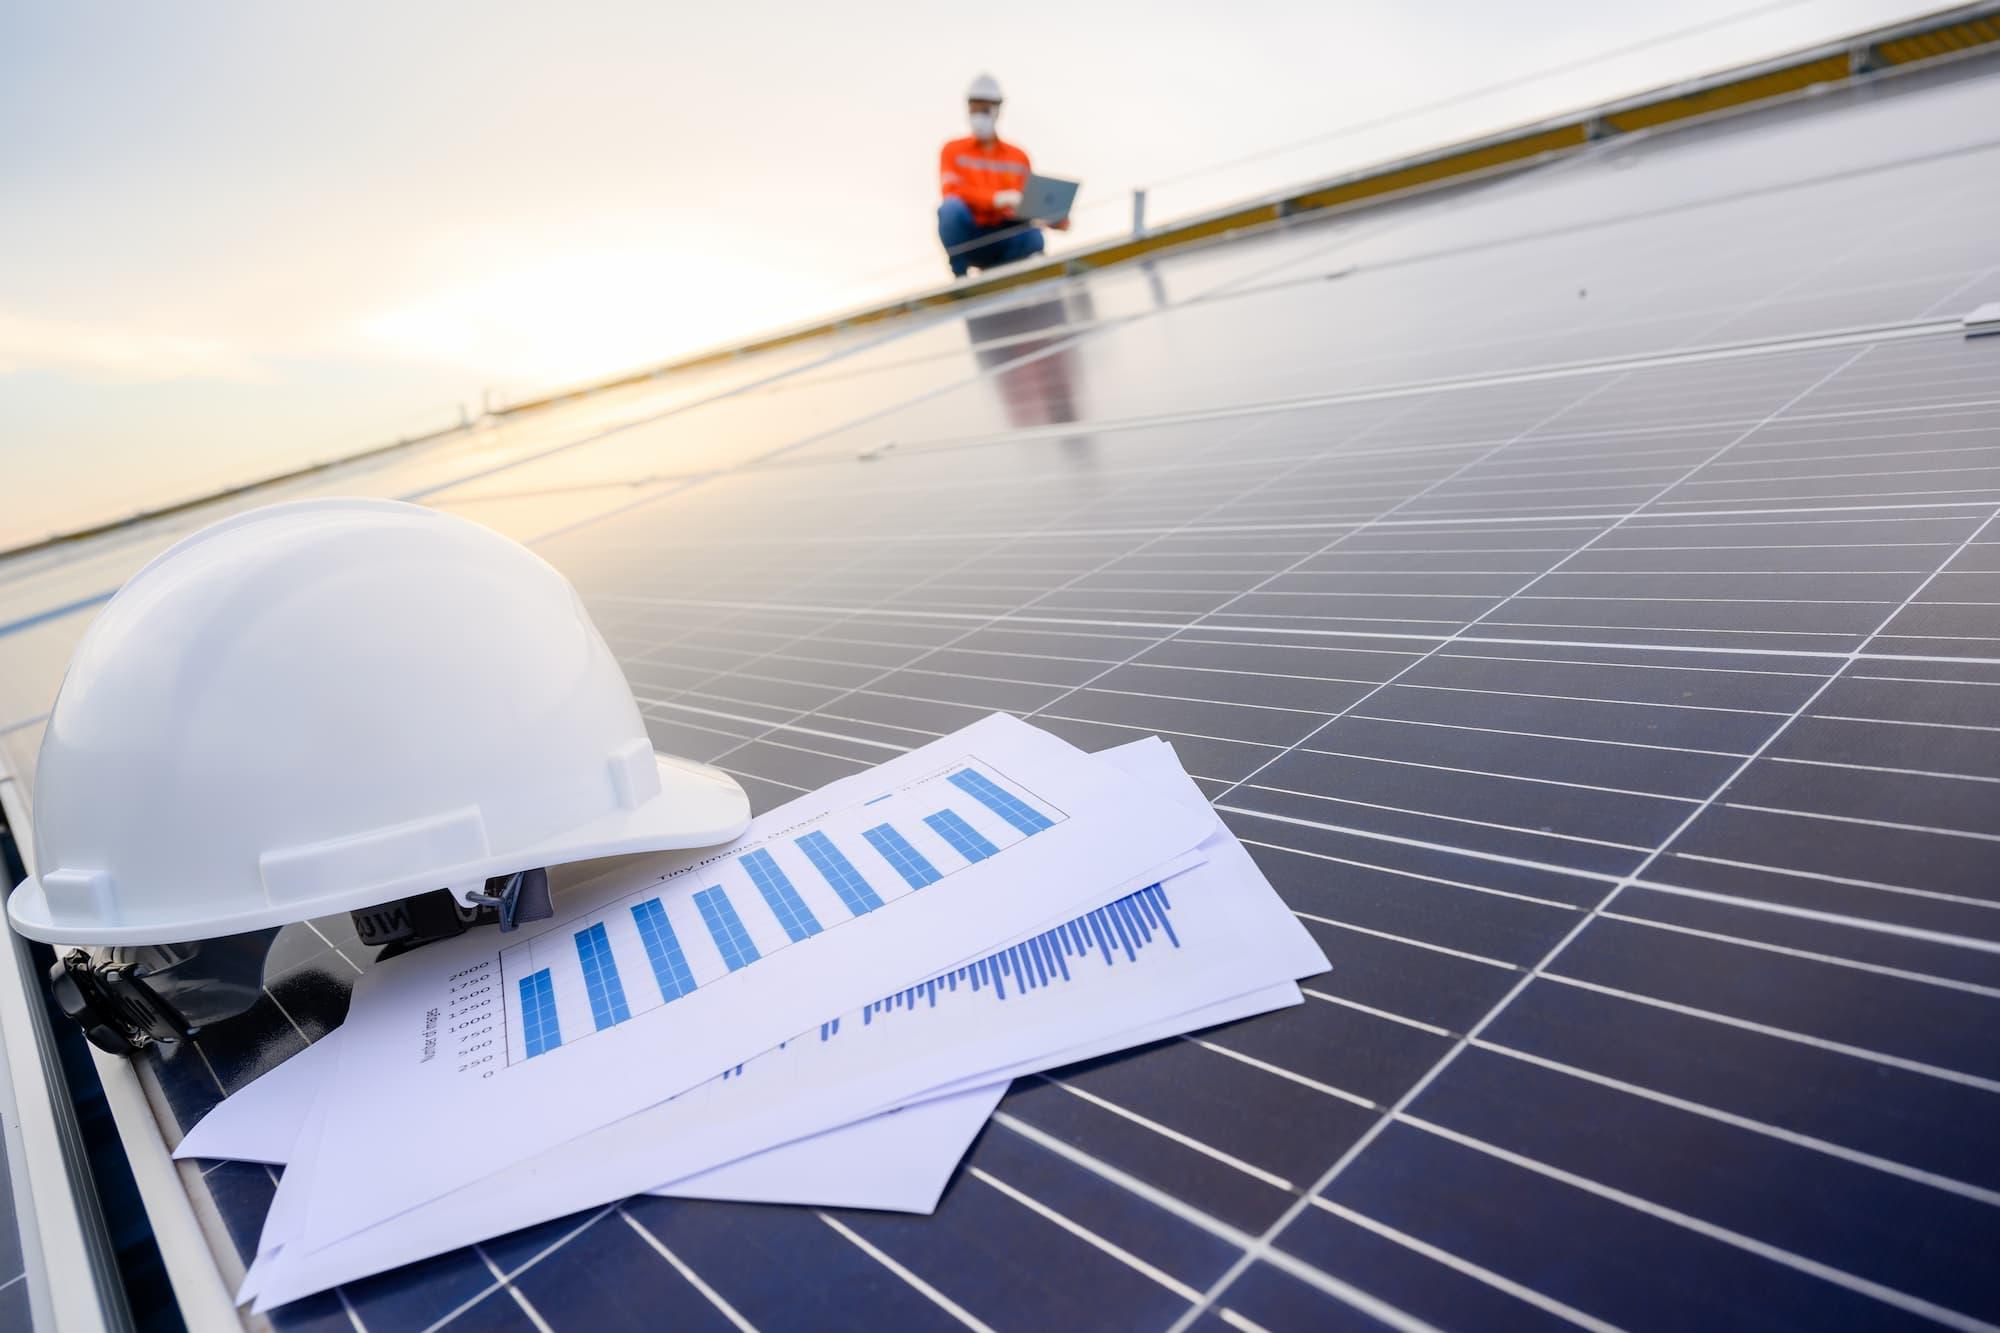 Sebrae Minas - Indústria - Energia Solar: Uma grande vantagem para a indústria